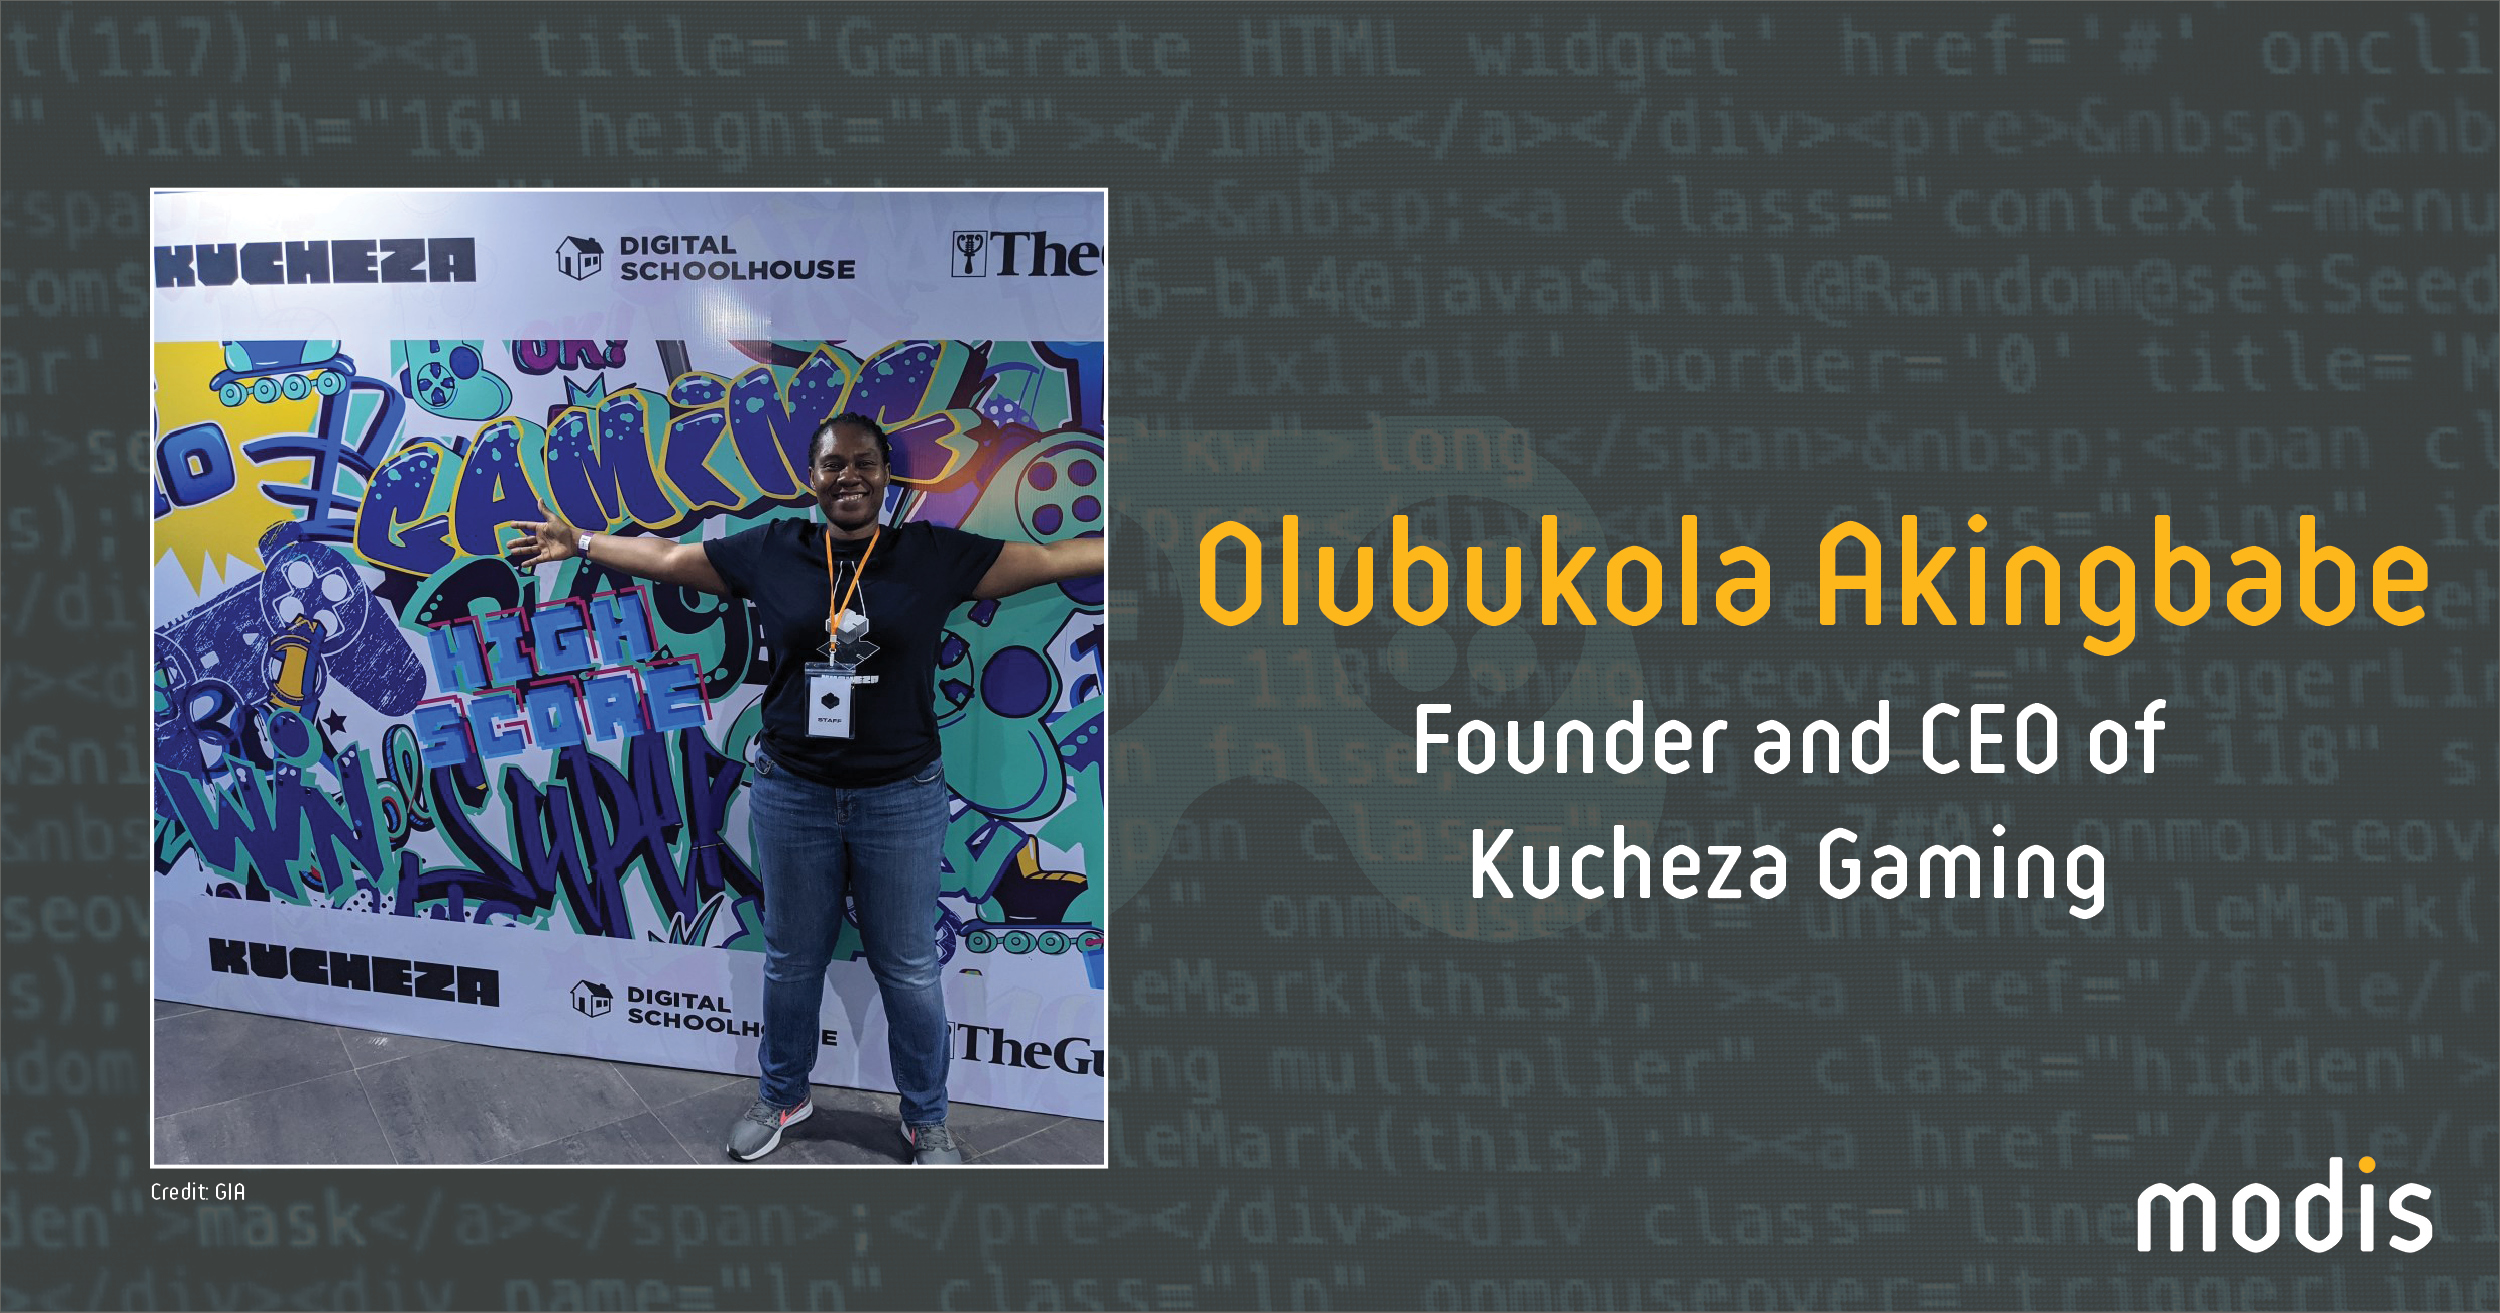 Olubukola Akingbade, founder and CEO of Kucheza Gaming